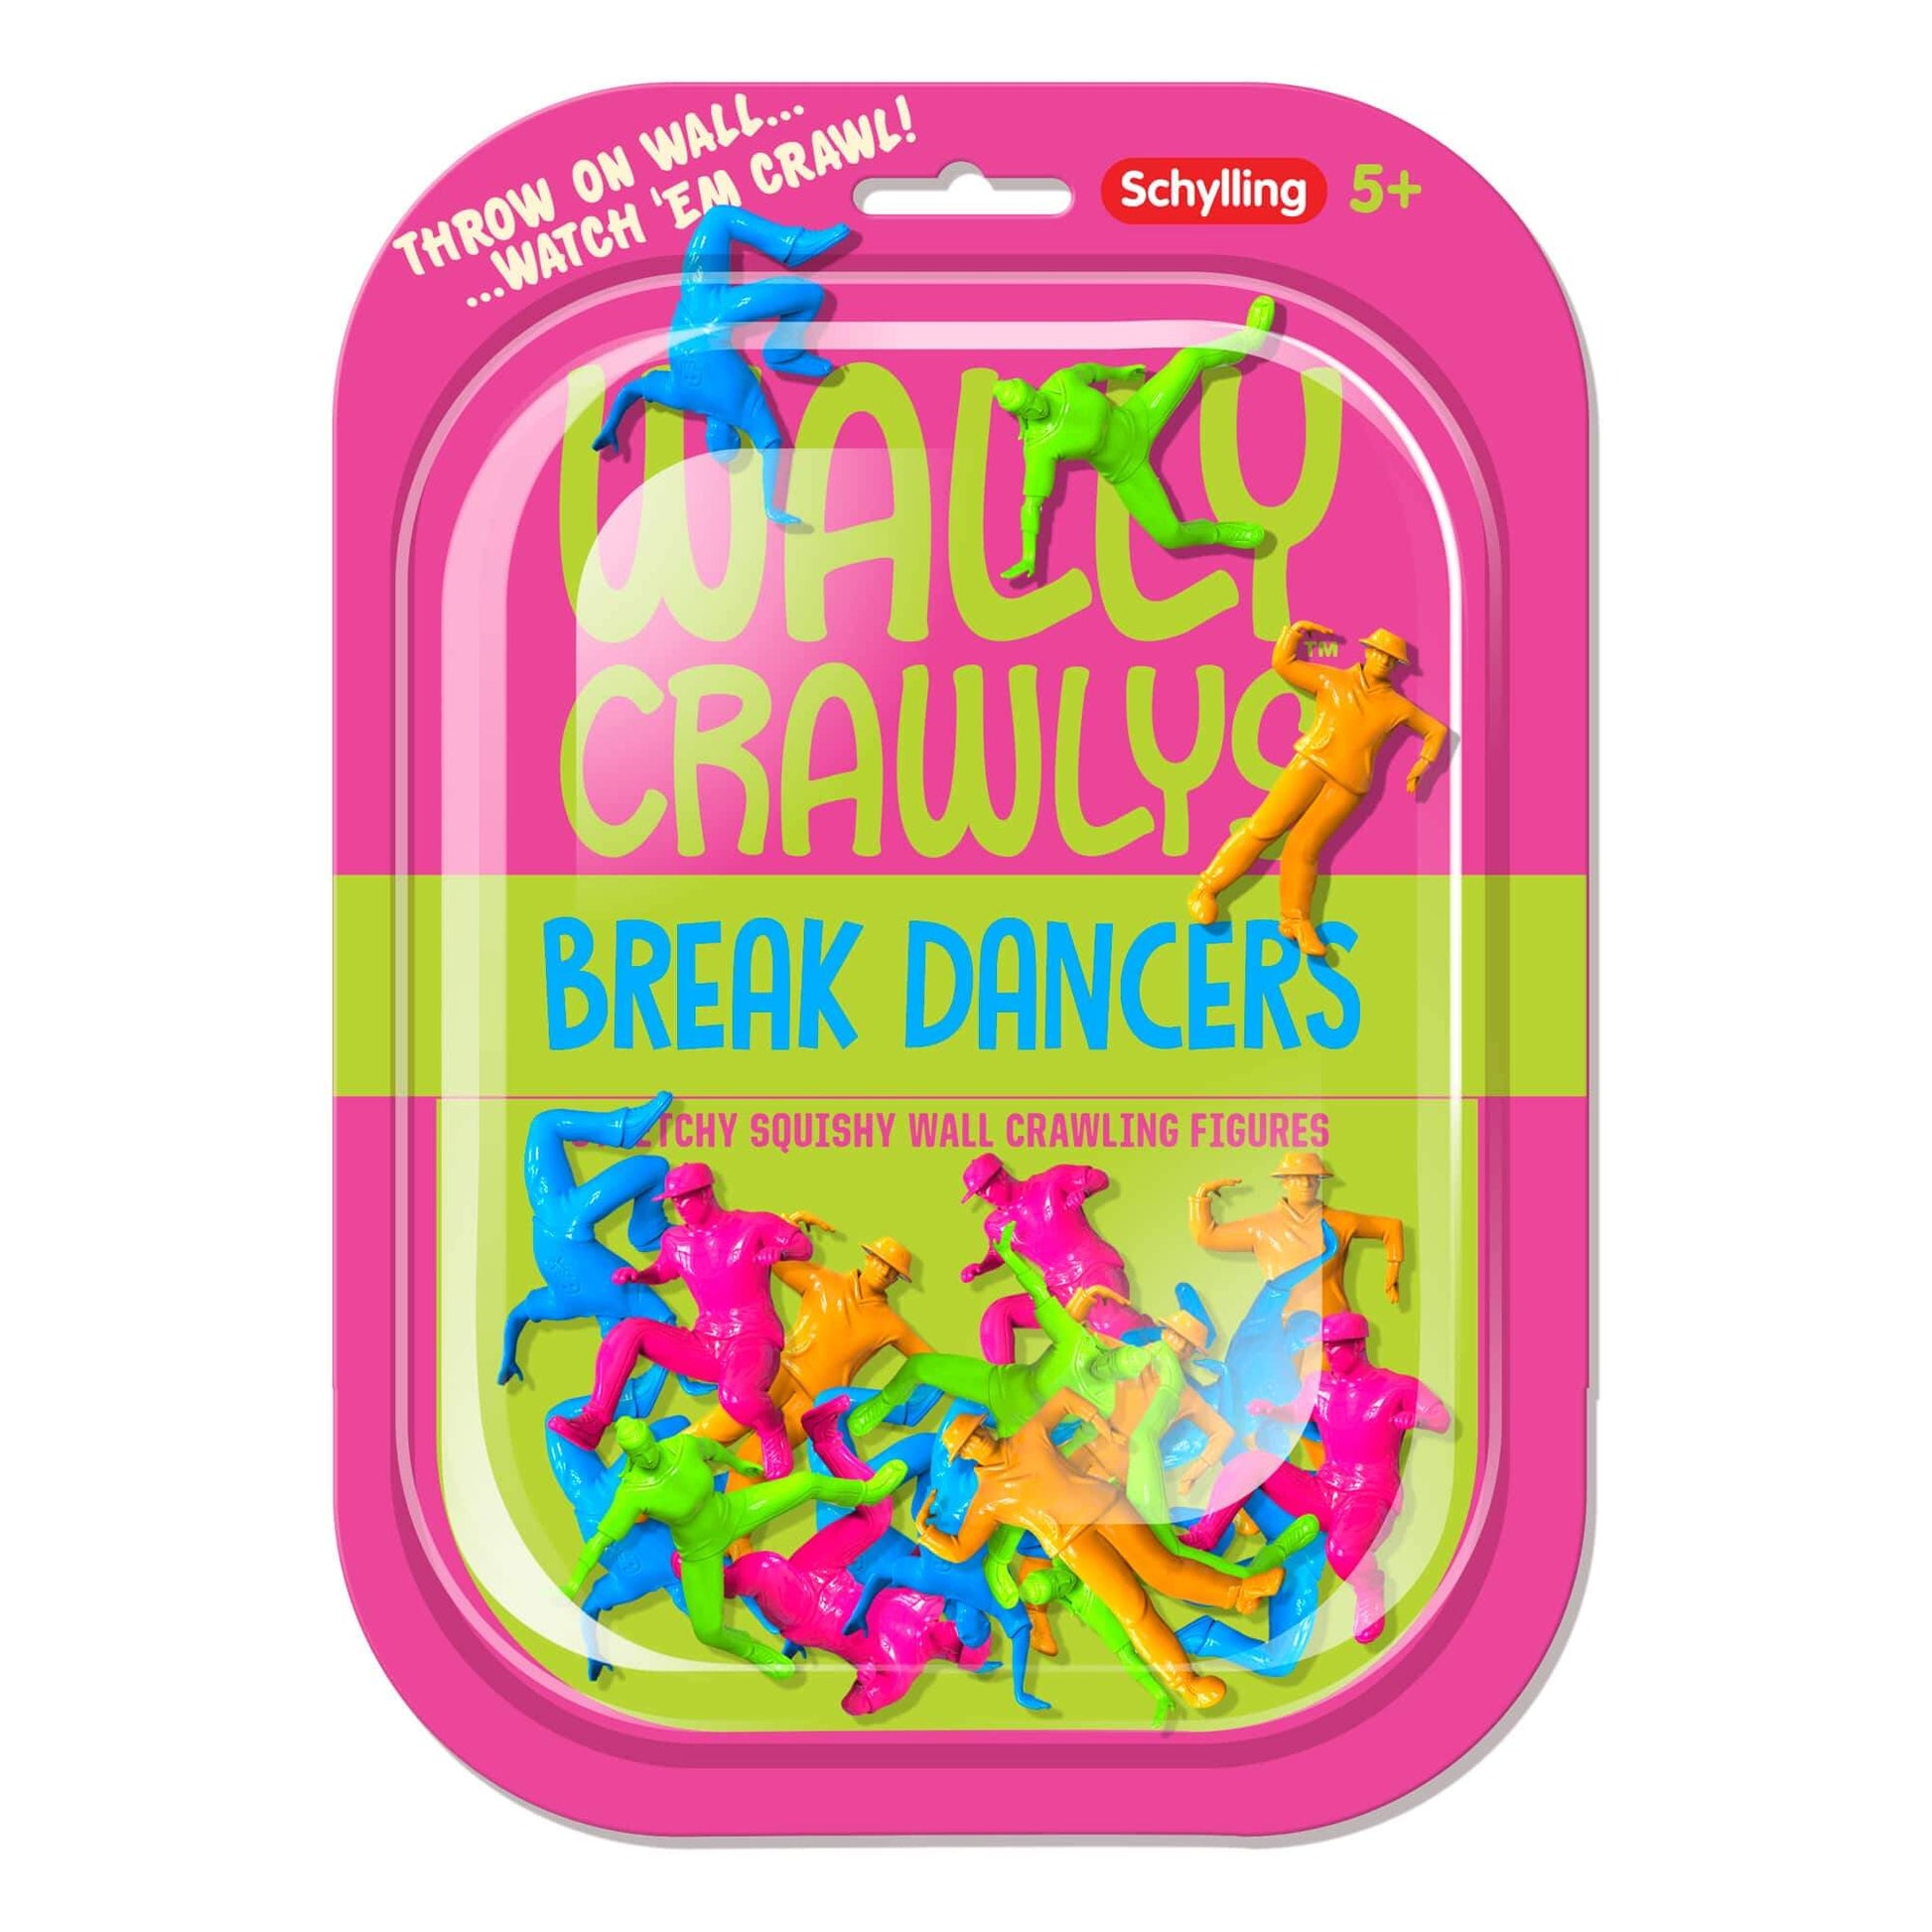 Wally Crawly Breakdancers